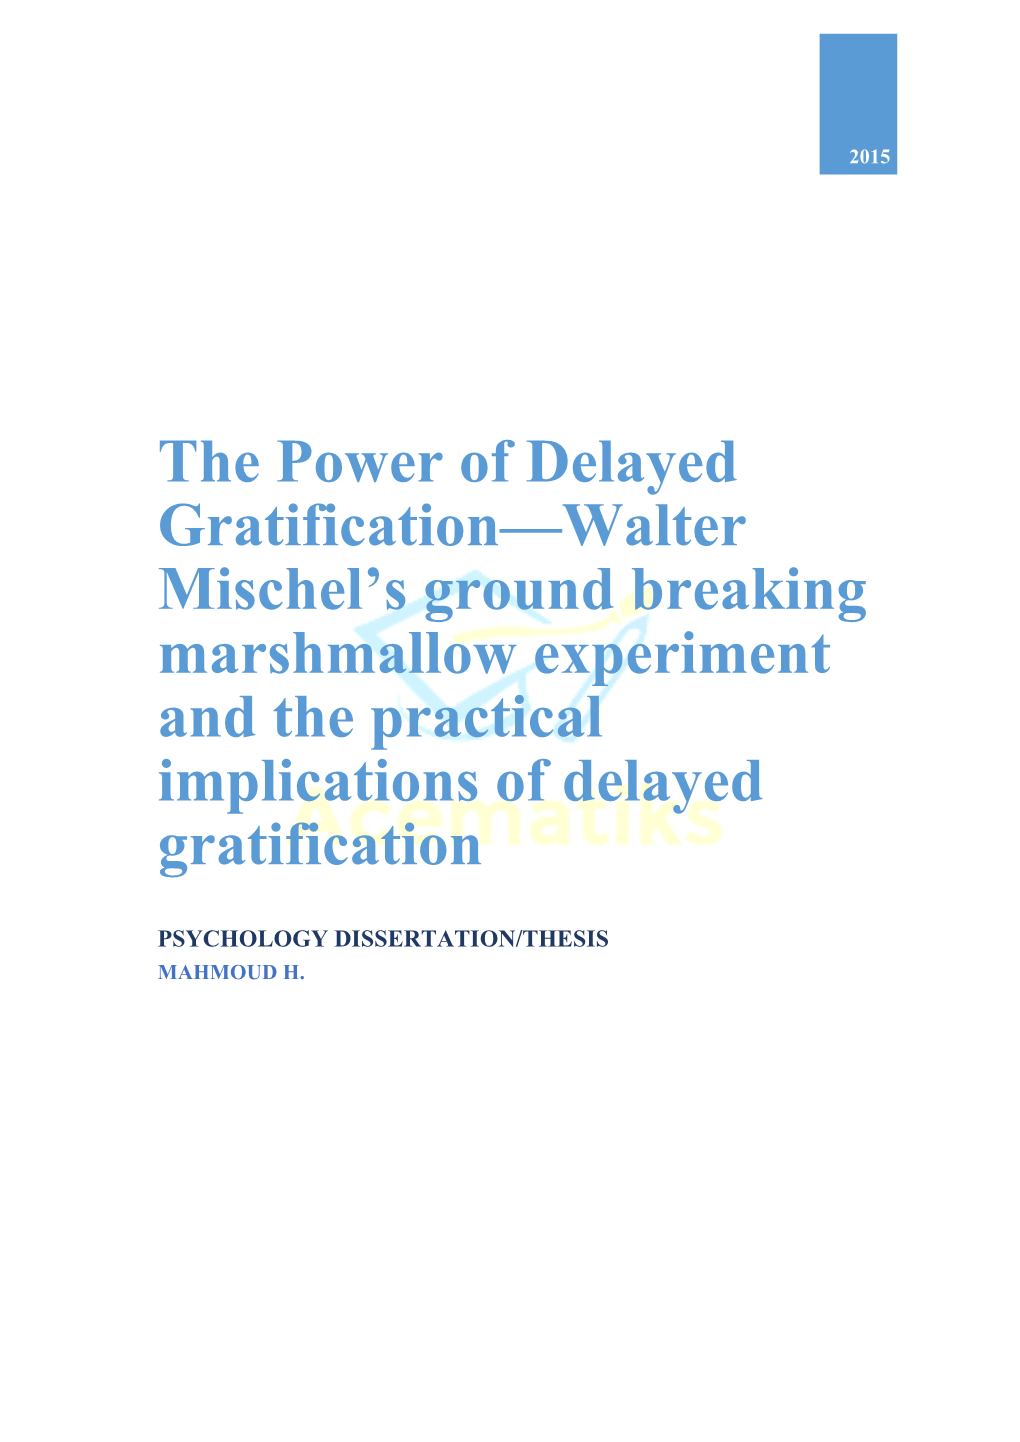 The Power of Delayed Gratification—Walter Mischel's Ground Breaking